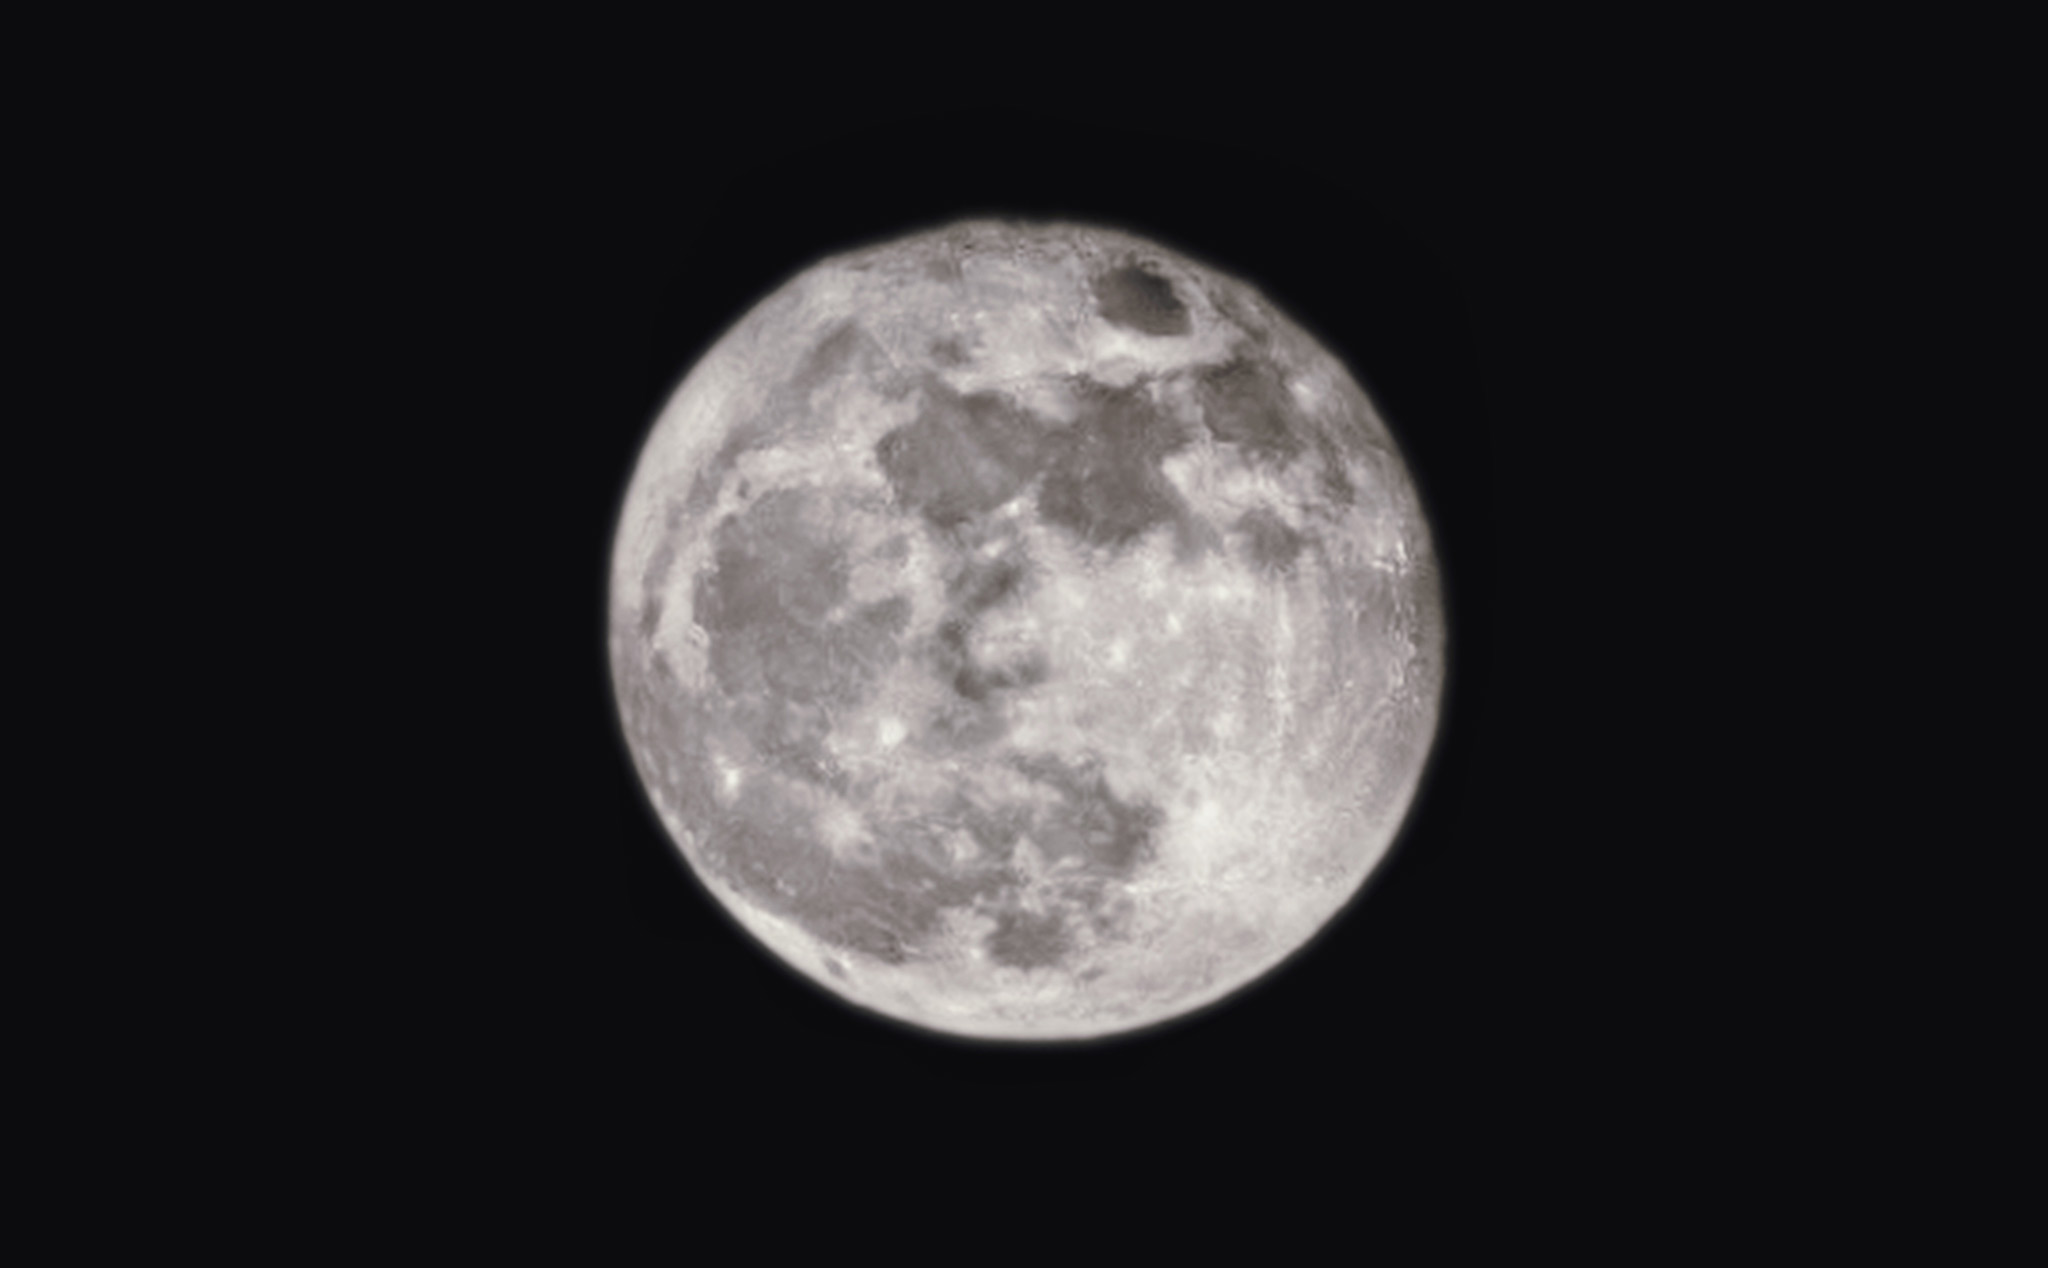 Không có chế độ chụp trăng, thì điện thoại có chụp được trăng không?